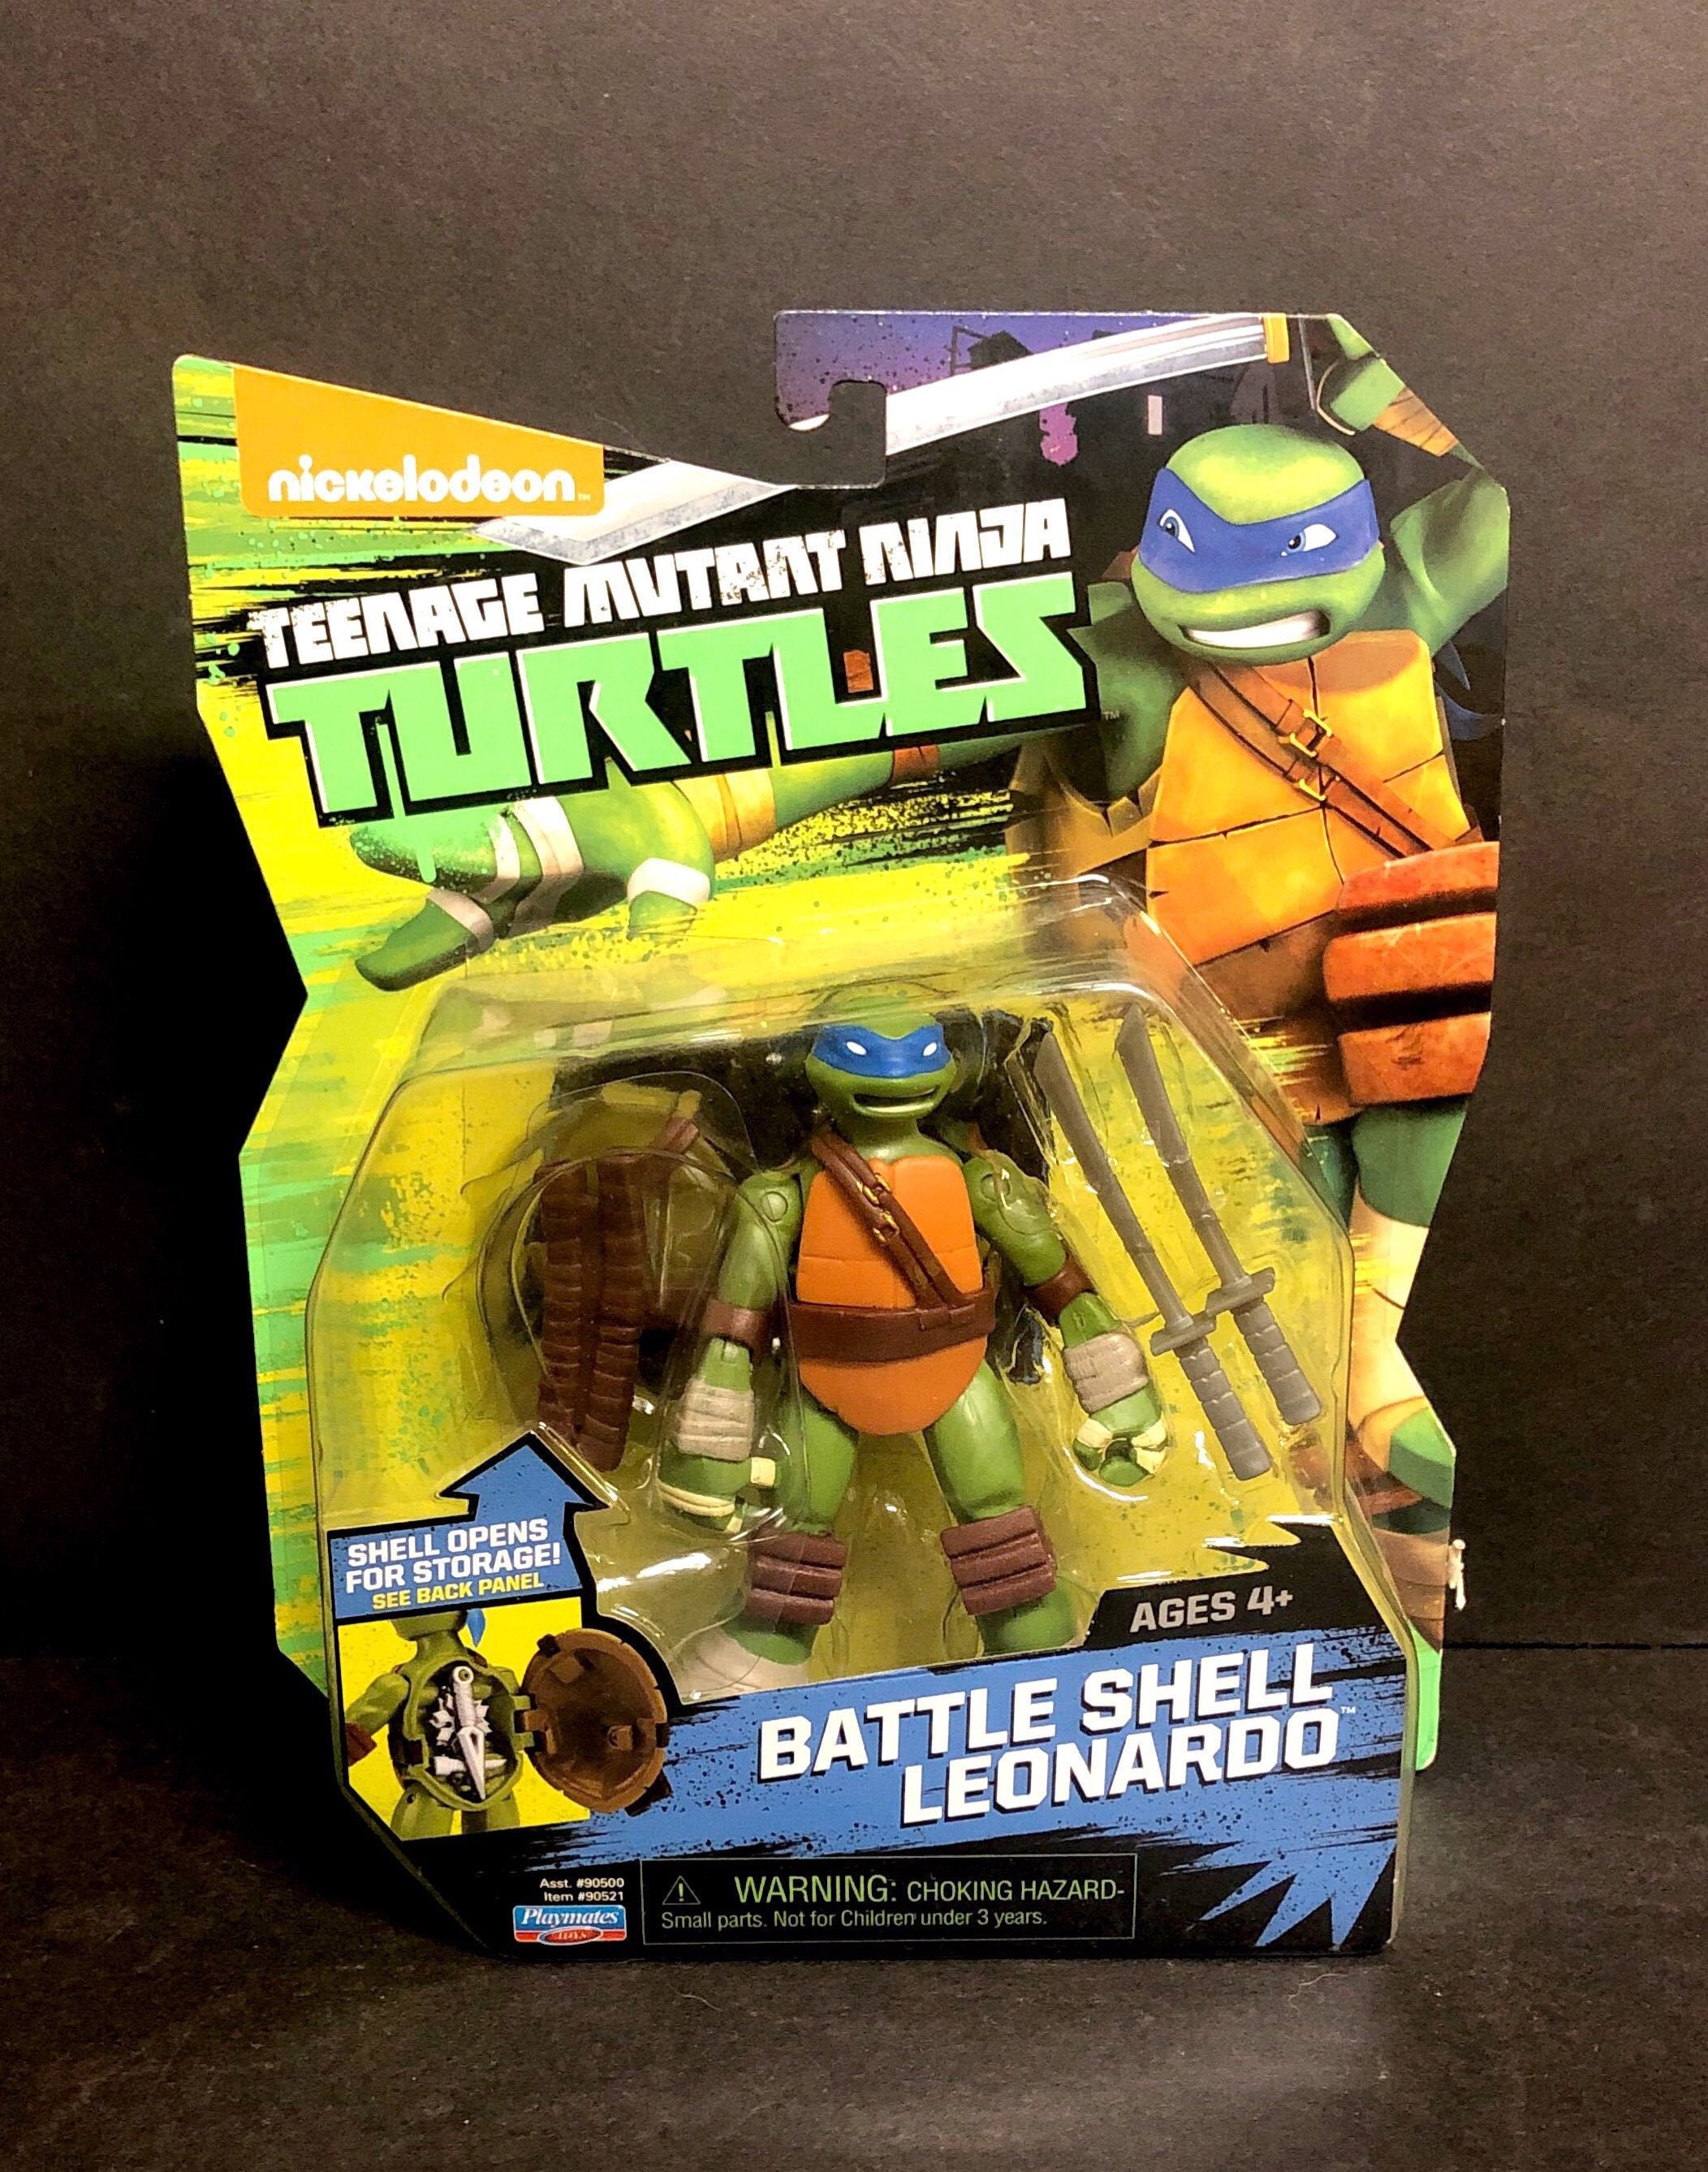 Las Tortugas Ninja (2012) - Serie 2012 